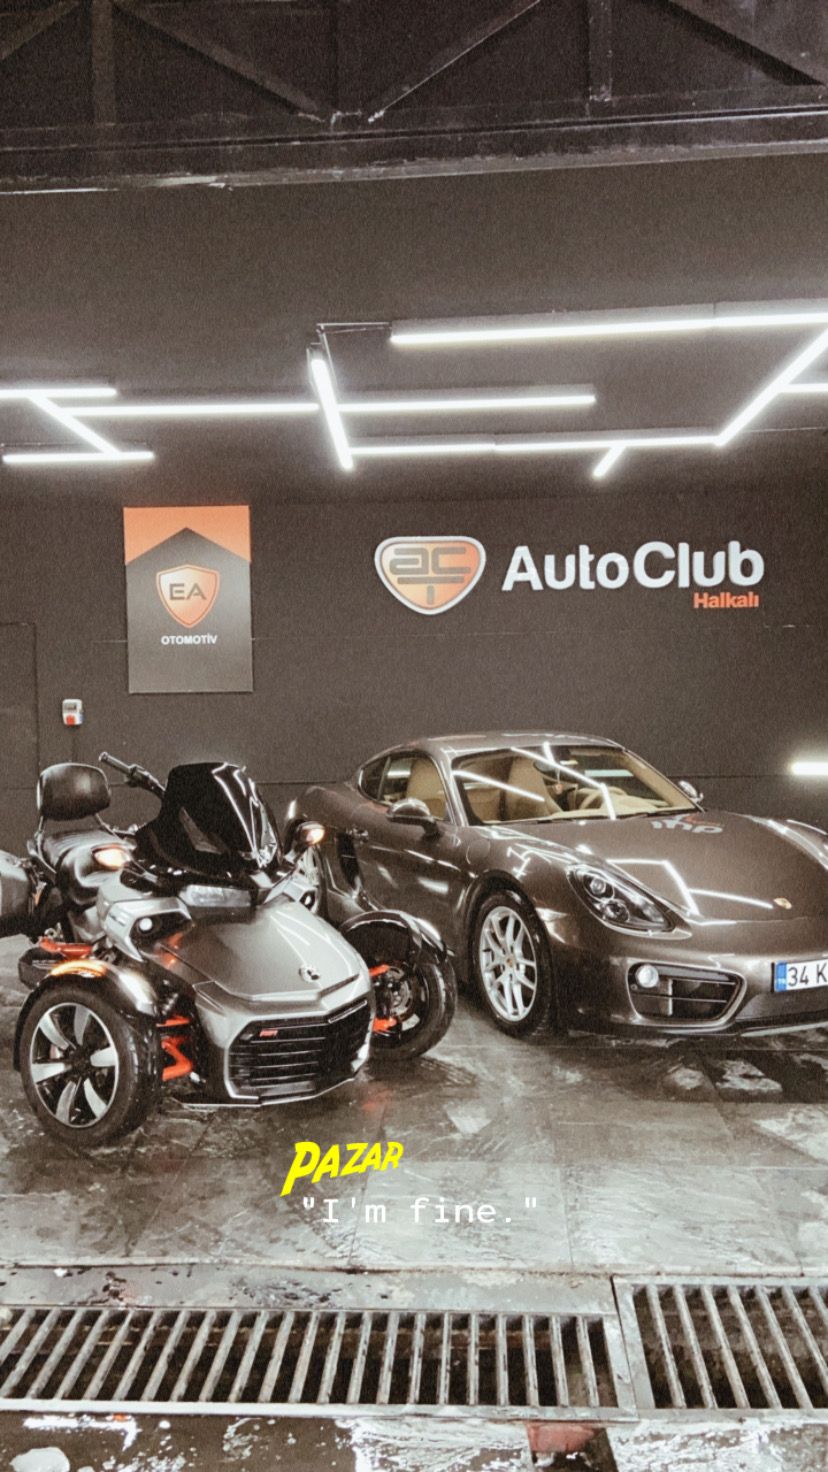 AutoClub Halkalı - İstanbul Küçükçekmece